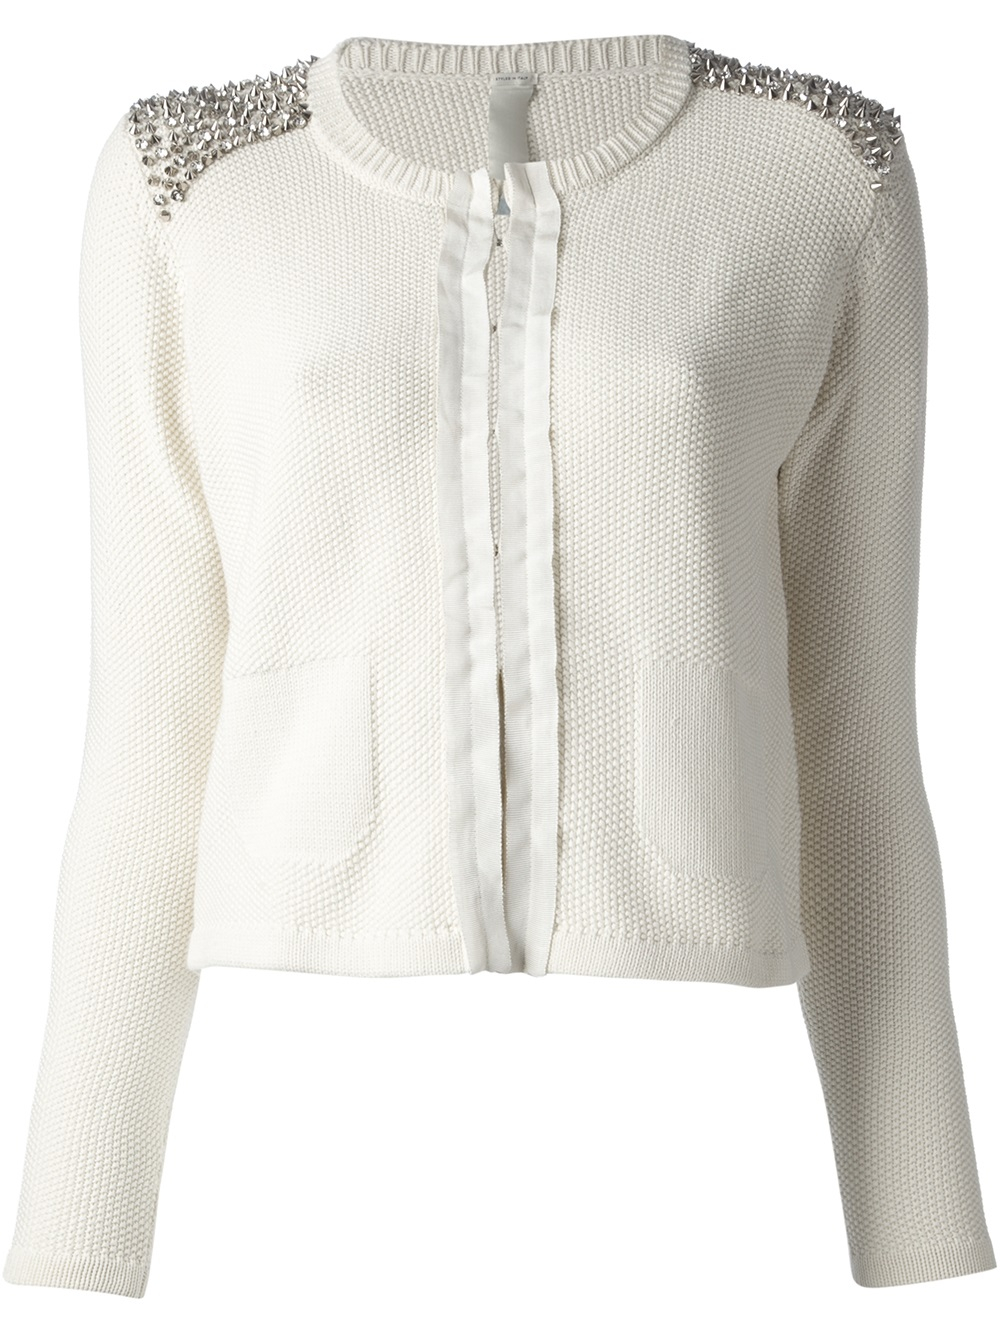 White cropped wrap sweater jacket websites zurich